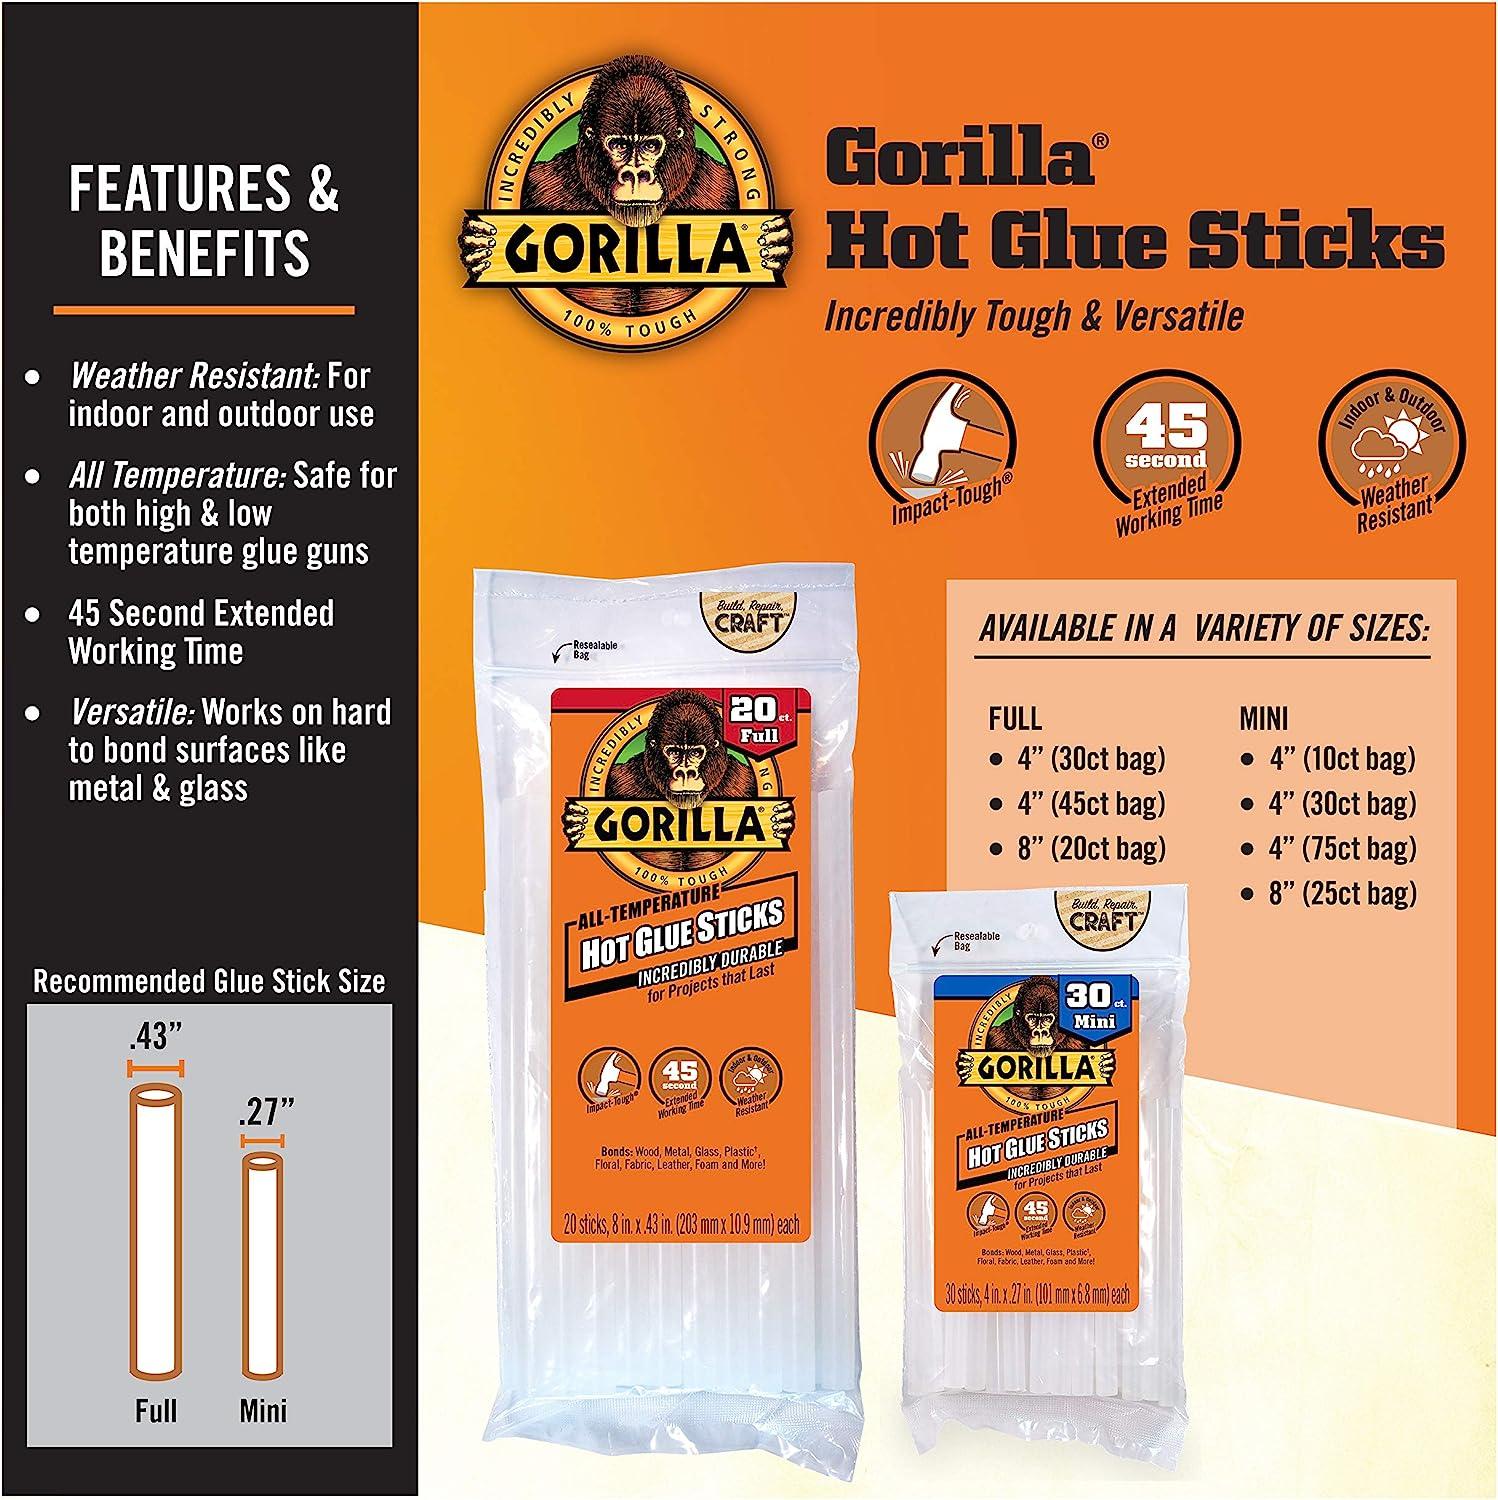 Gorilla Dual Temp Mini Hot Glue Gun Kit with 30 Hot Glue Sticks Glue Gun +  30 ct Sticks